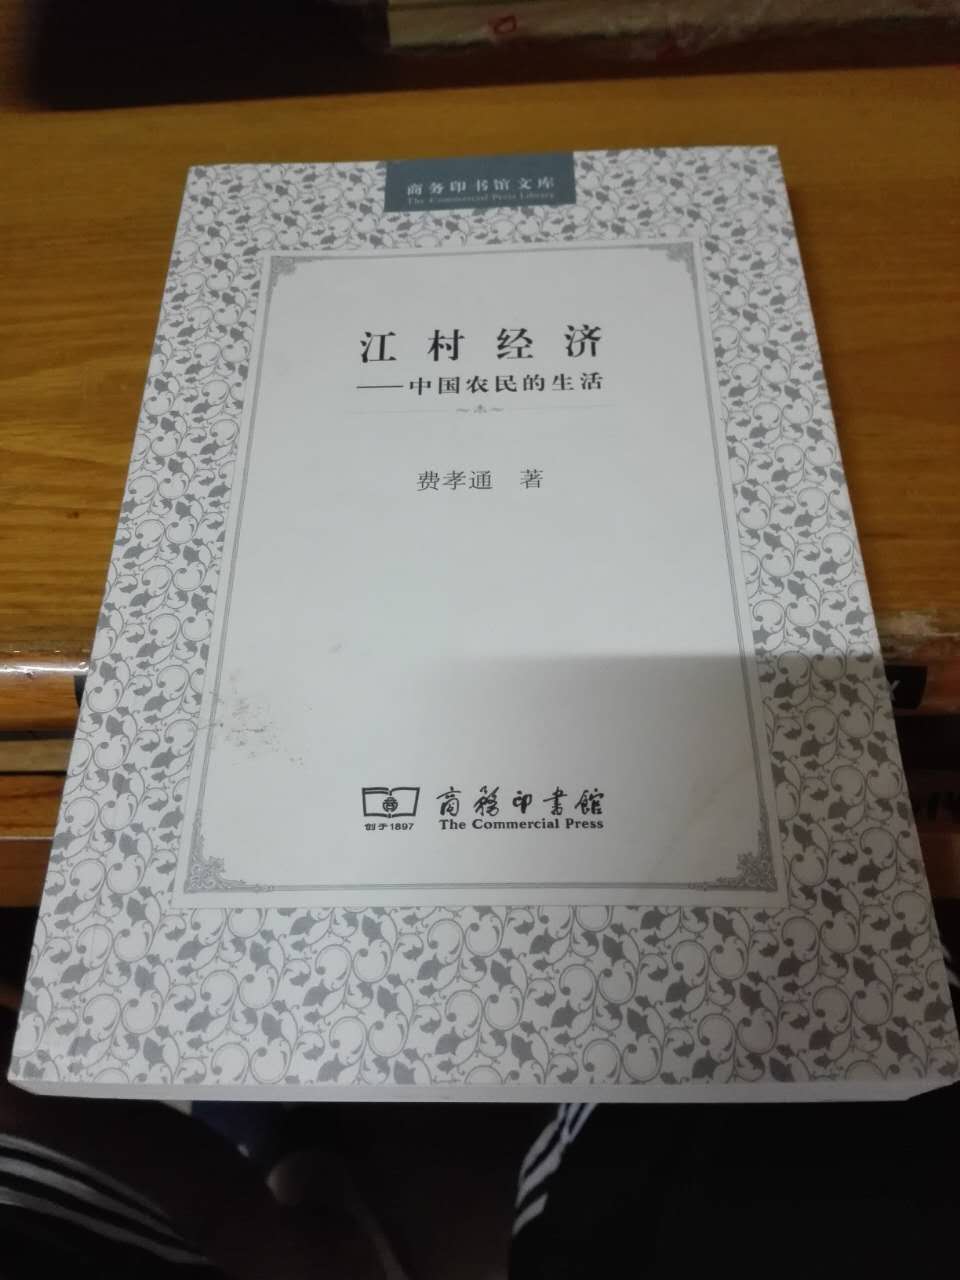 《江村经济：中国农民的生活》是一本描述中国农民的消费、生产、分配和交易等体系的书，是根据对中国东部，太湖东南岸开弦弓村的实地考察写成的。它旨在说明这一经济体系与特定地理环境的关系，以及与这个社区的社会结构的关系。同大多数中国农村一样，这个村庄正经历着一个巨大的变迁过程。